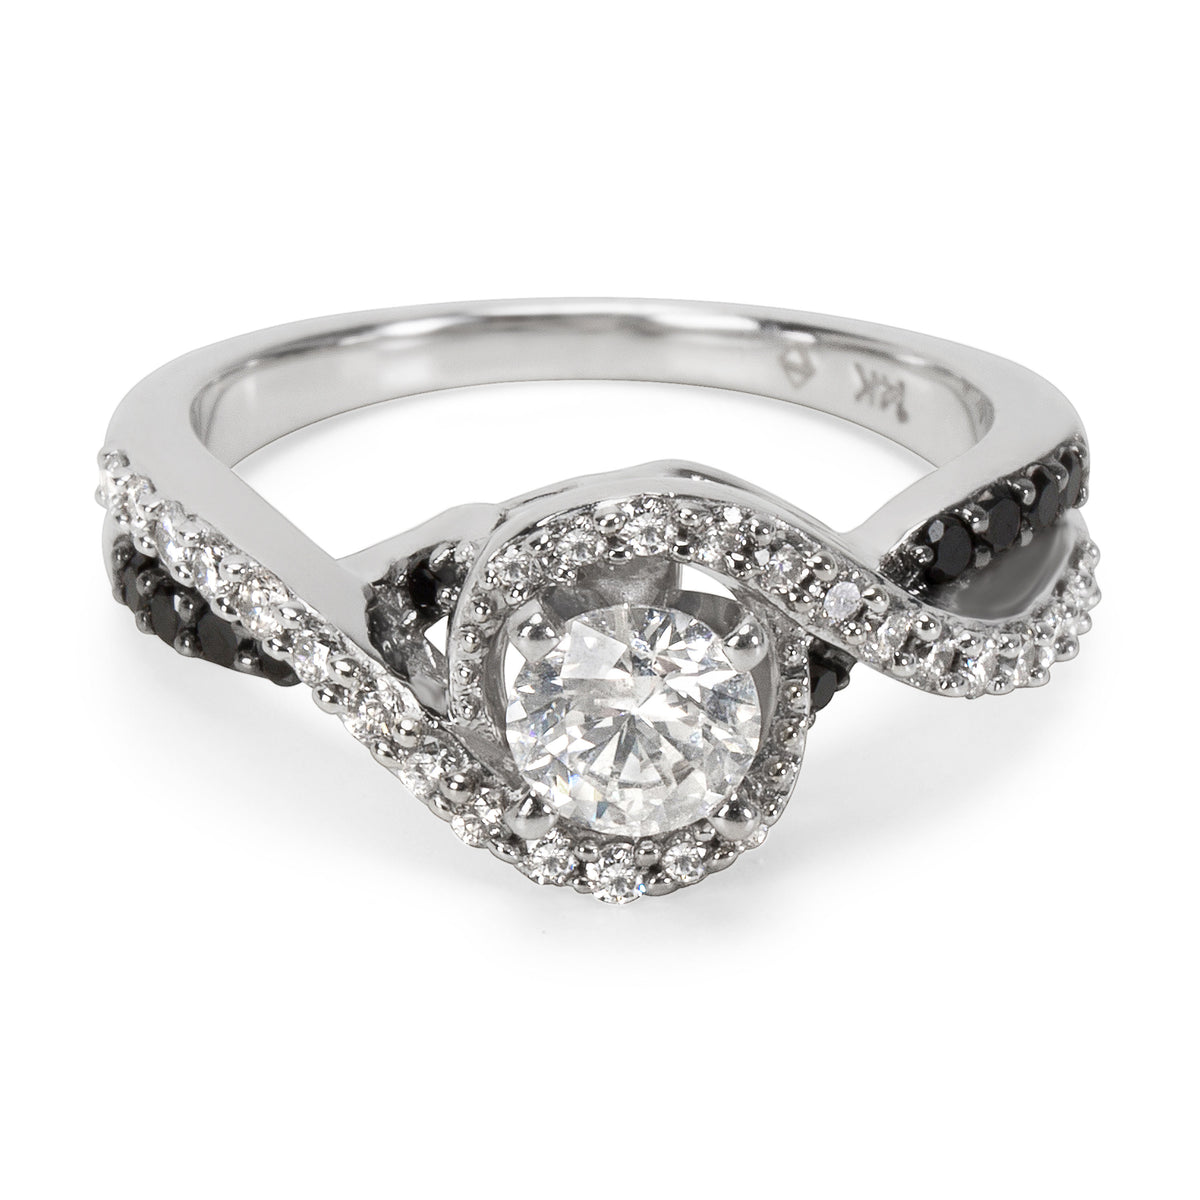 Black & White Diamond Engagement Ring in 14KT White Gold 0.75 ctw